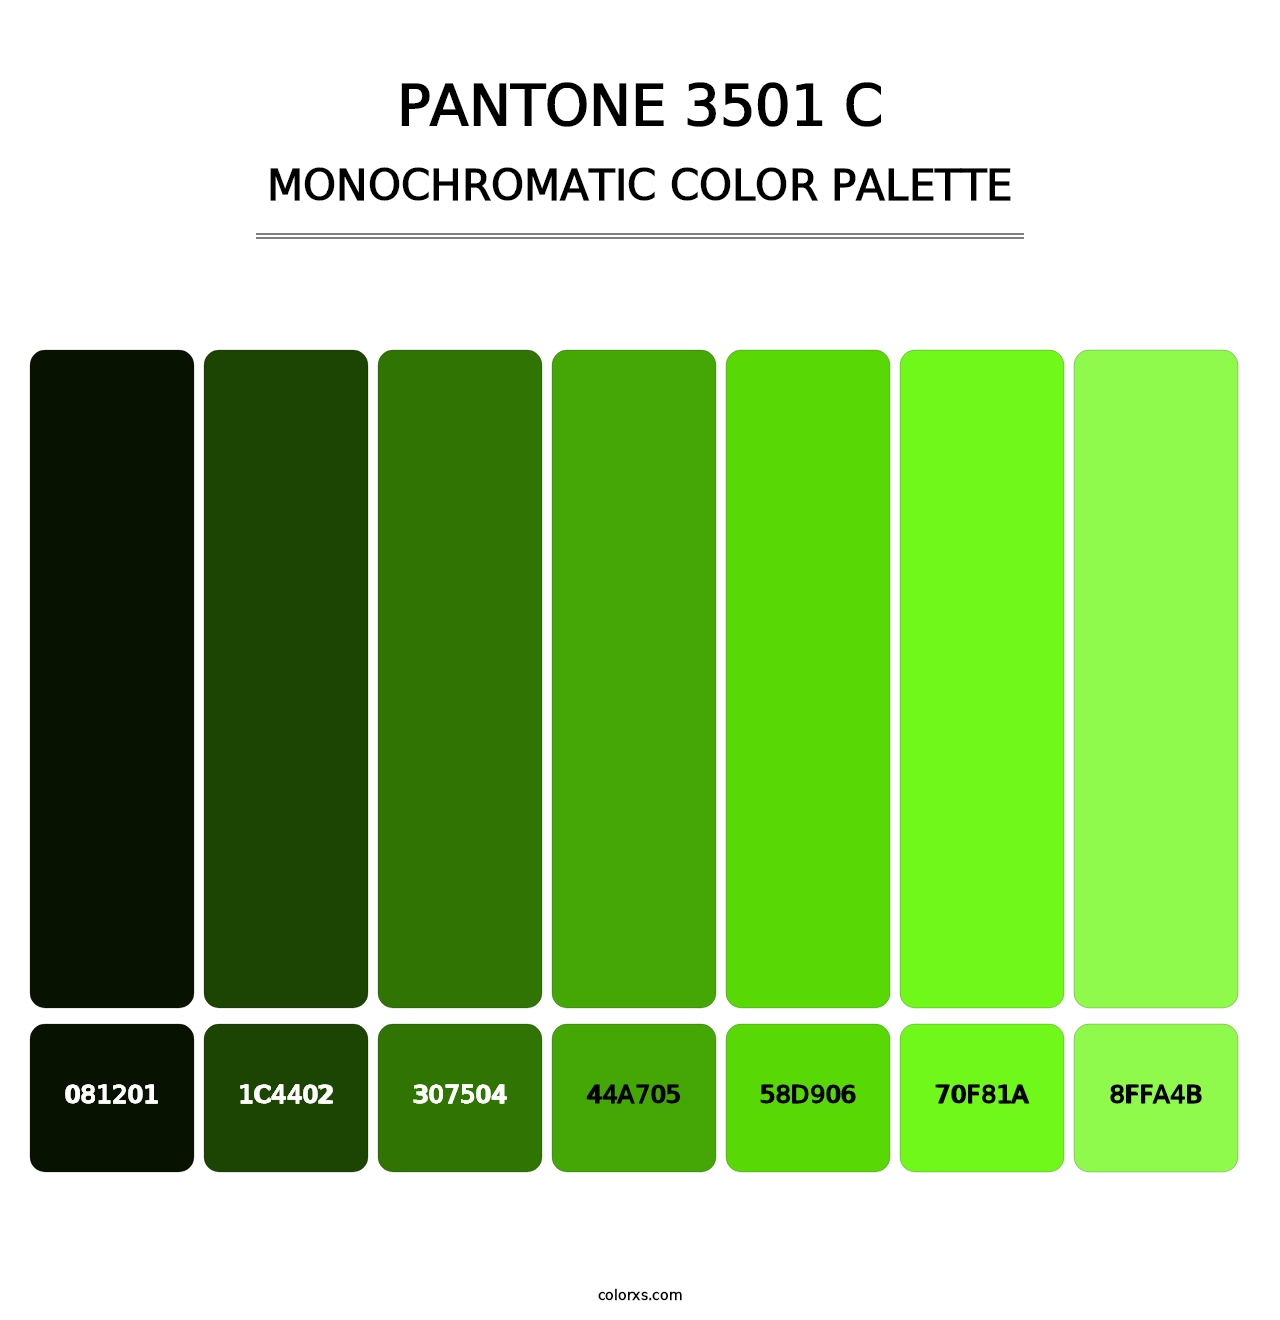 PANTONE 3501 C - Monochromatic Color Palette